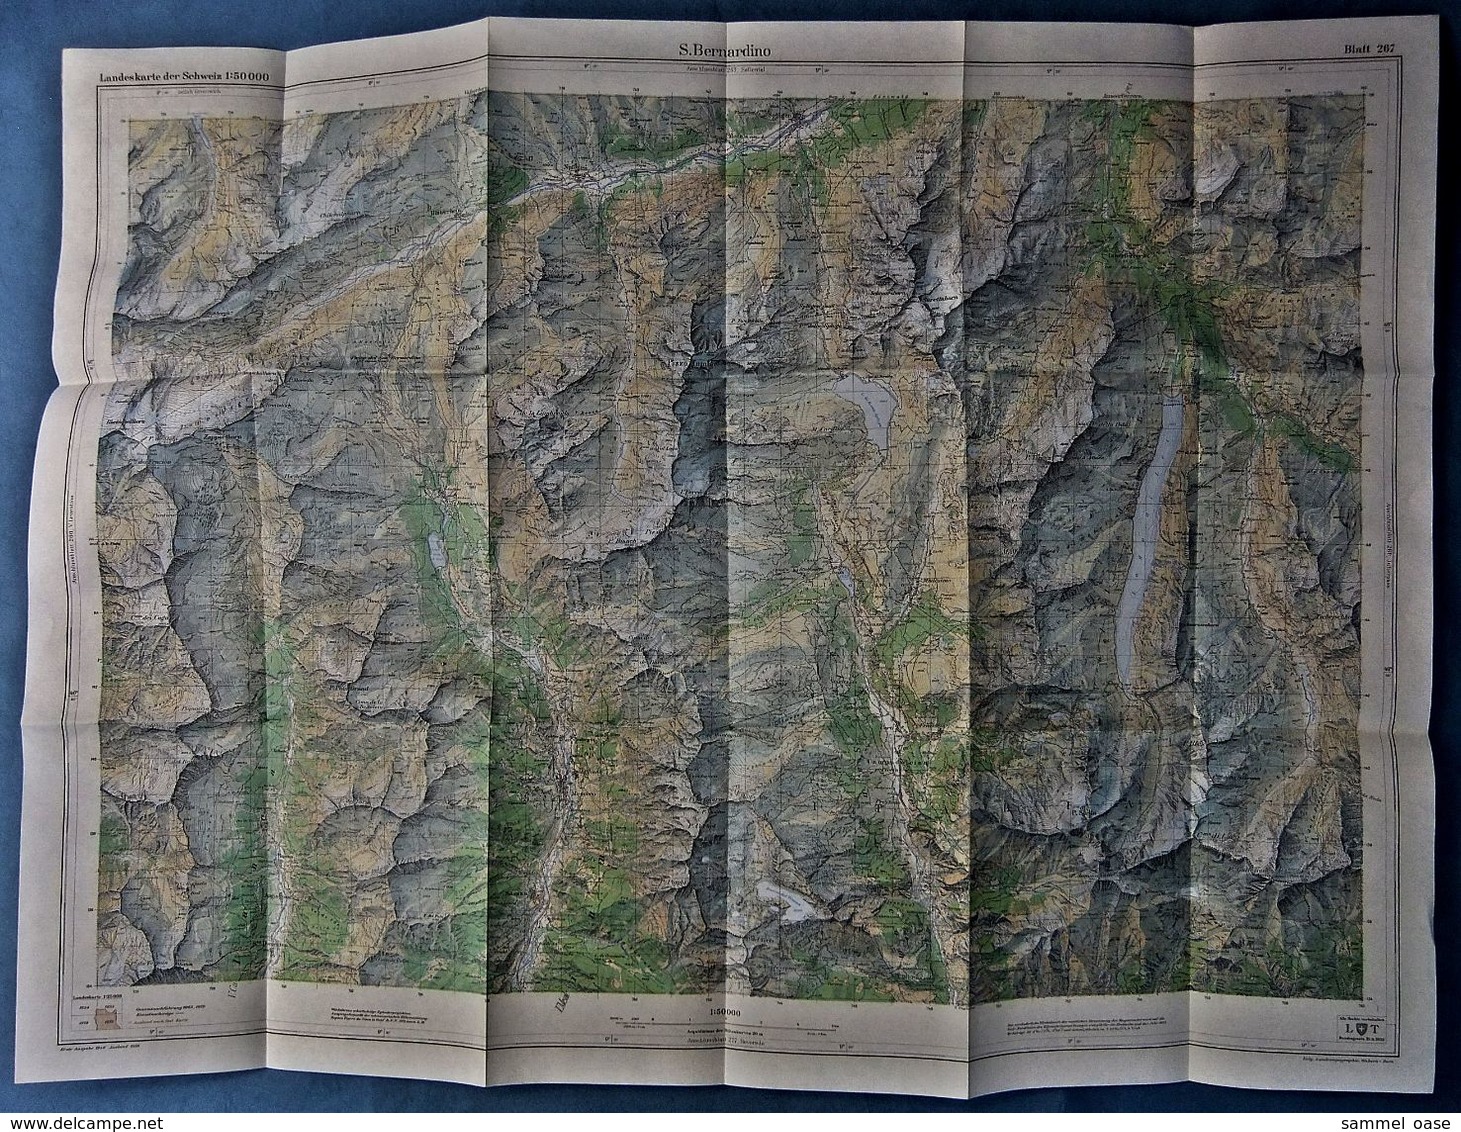 Topographische Karte / Landeskarte Schweiz  -  S. Bernardino 267  - 1:50 000  -  1970 - Mappemondes